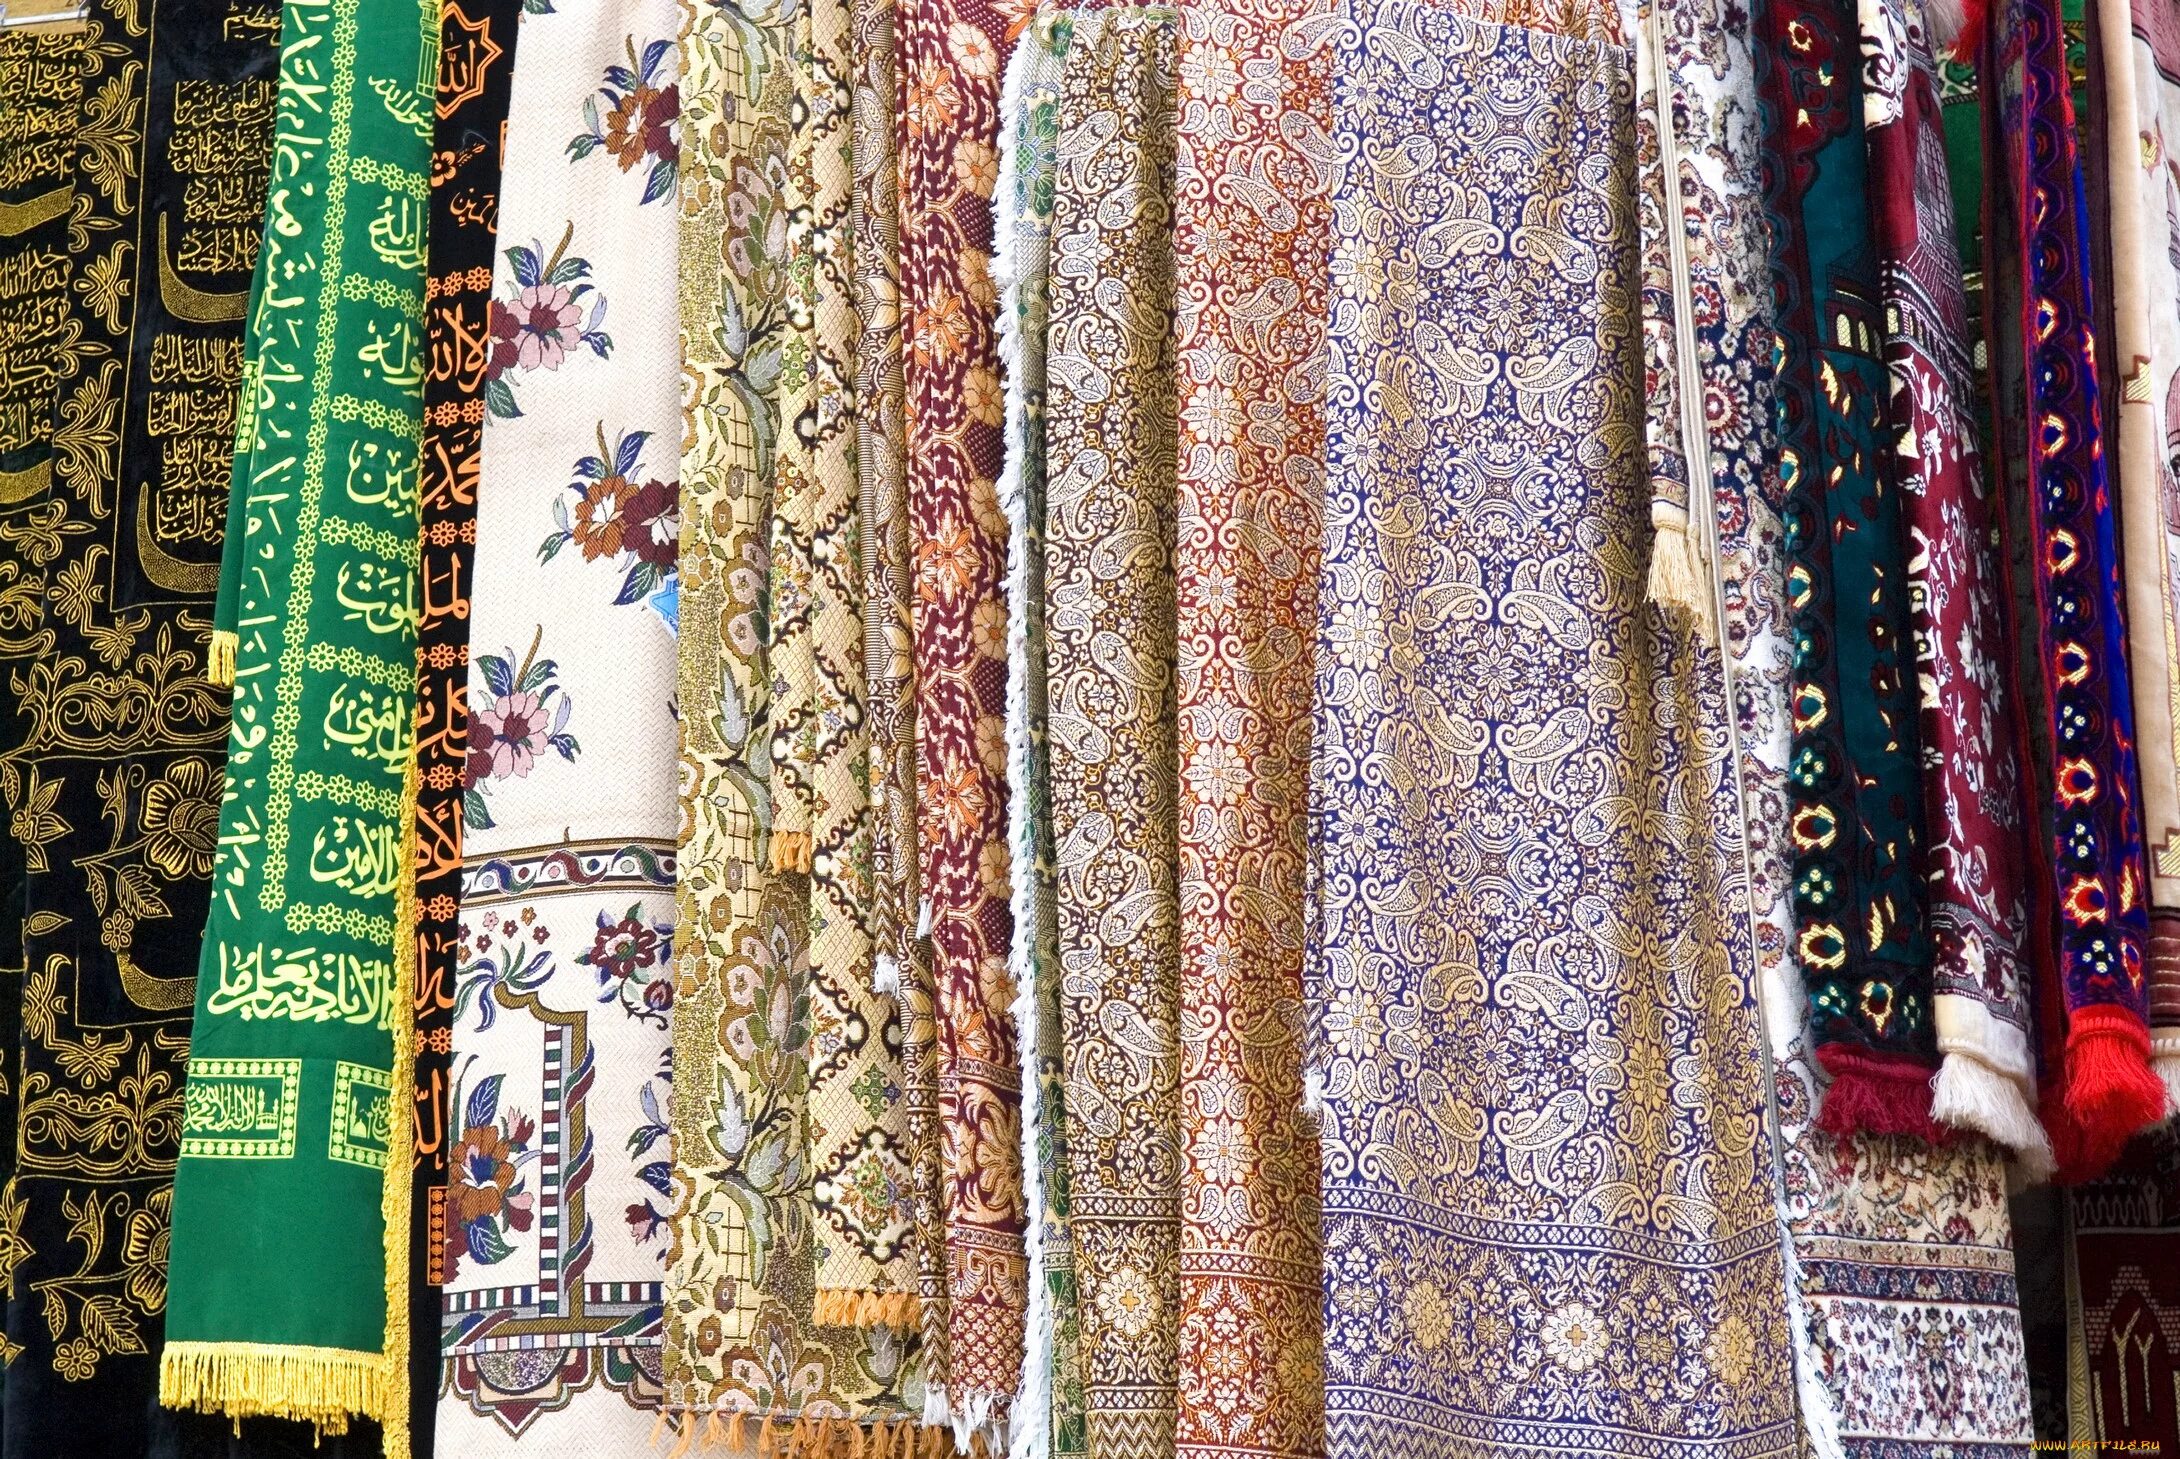 Купить ткань по оптовым ценам. Таджикские ткани. Рынок тканей. Ткани из Таджикистана. Ткани для одежды.